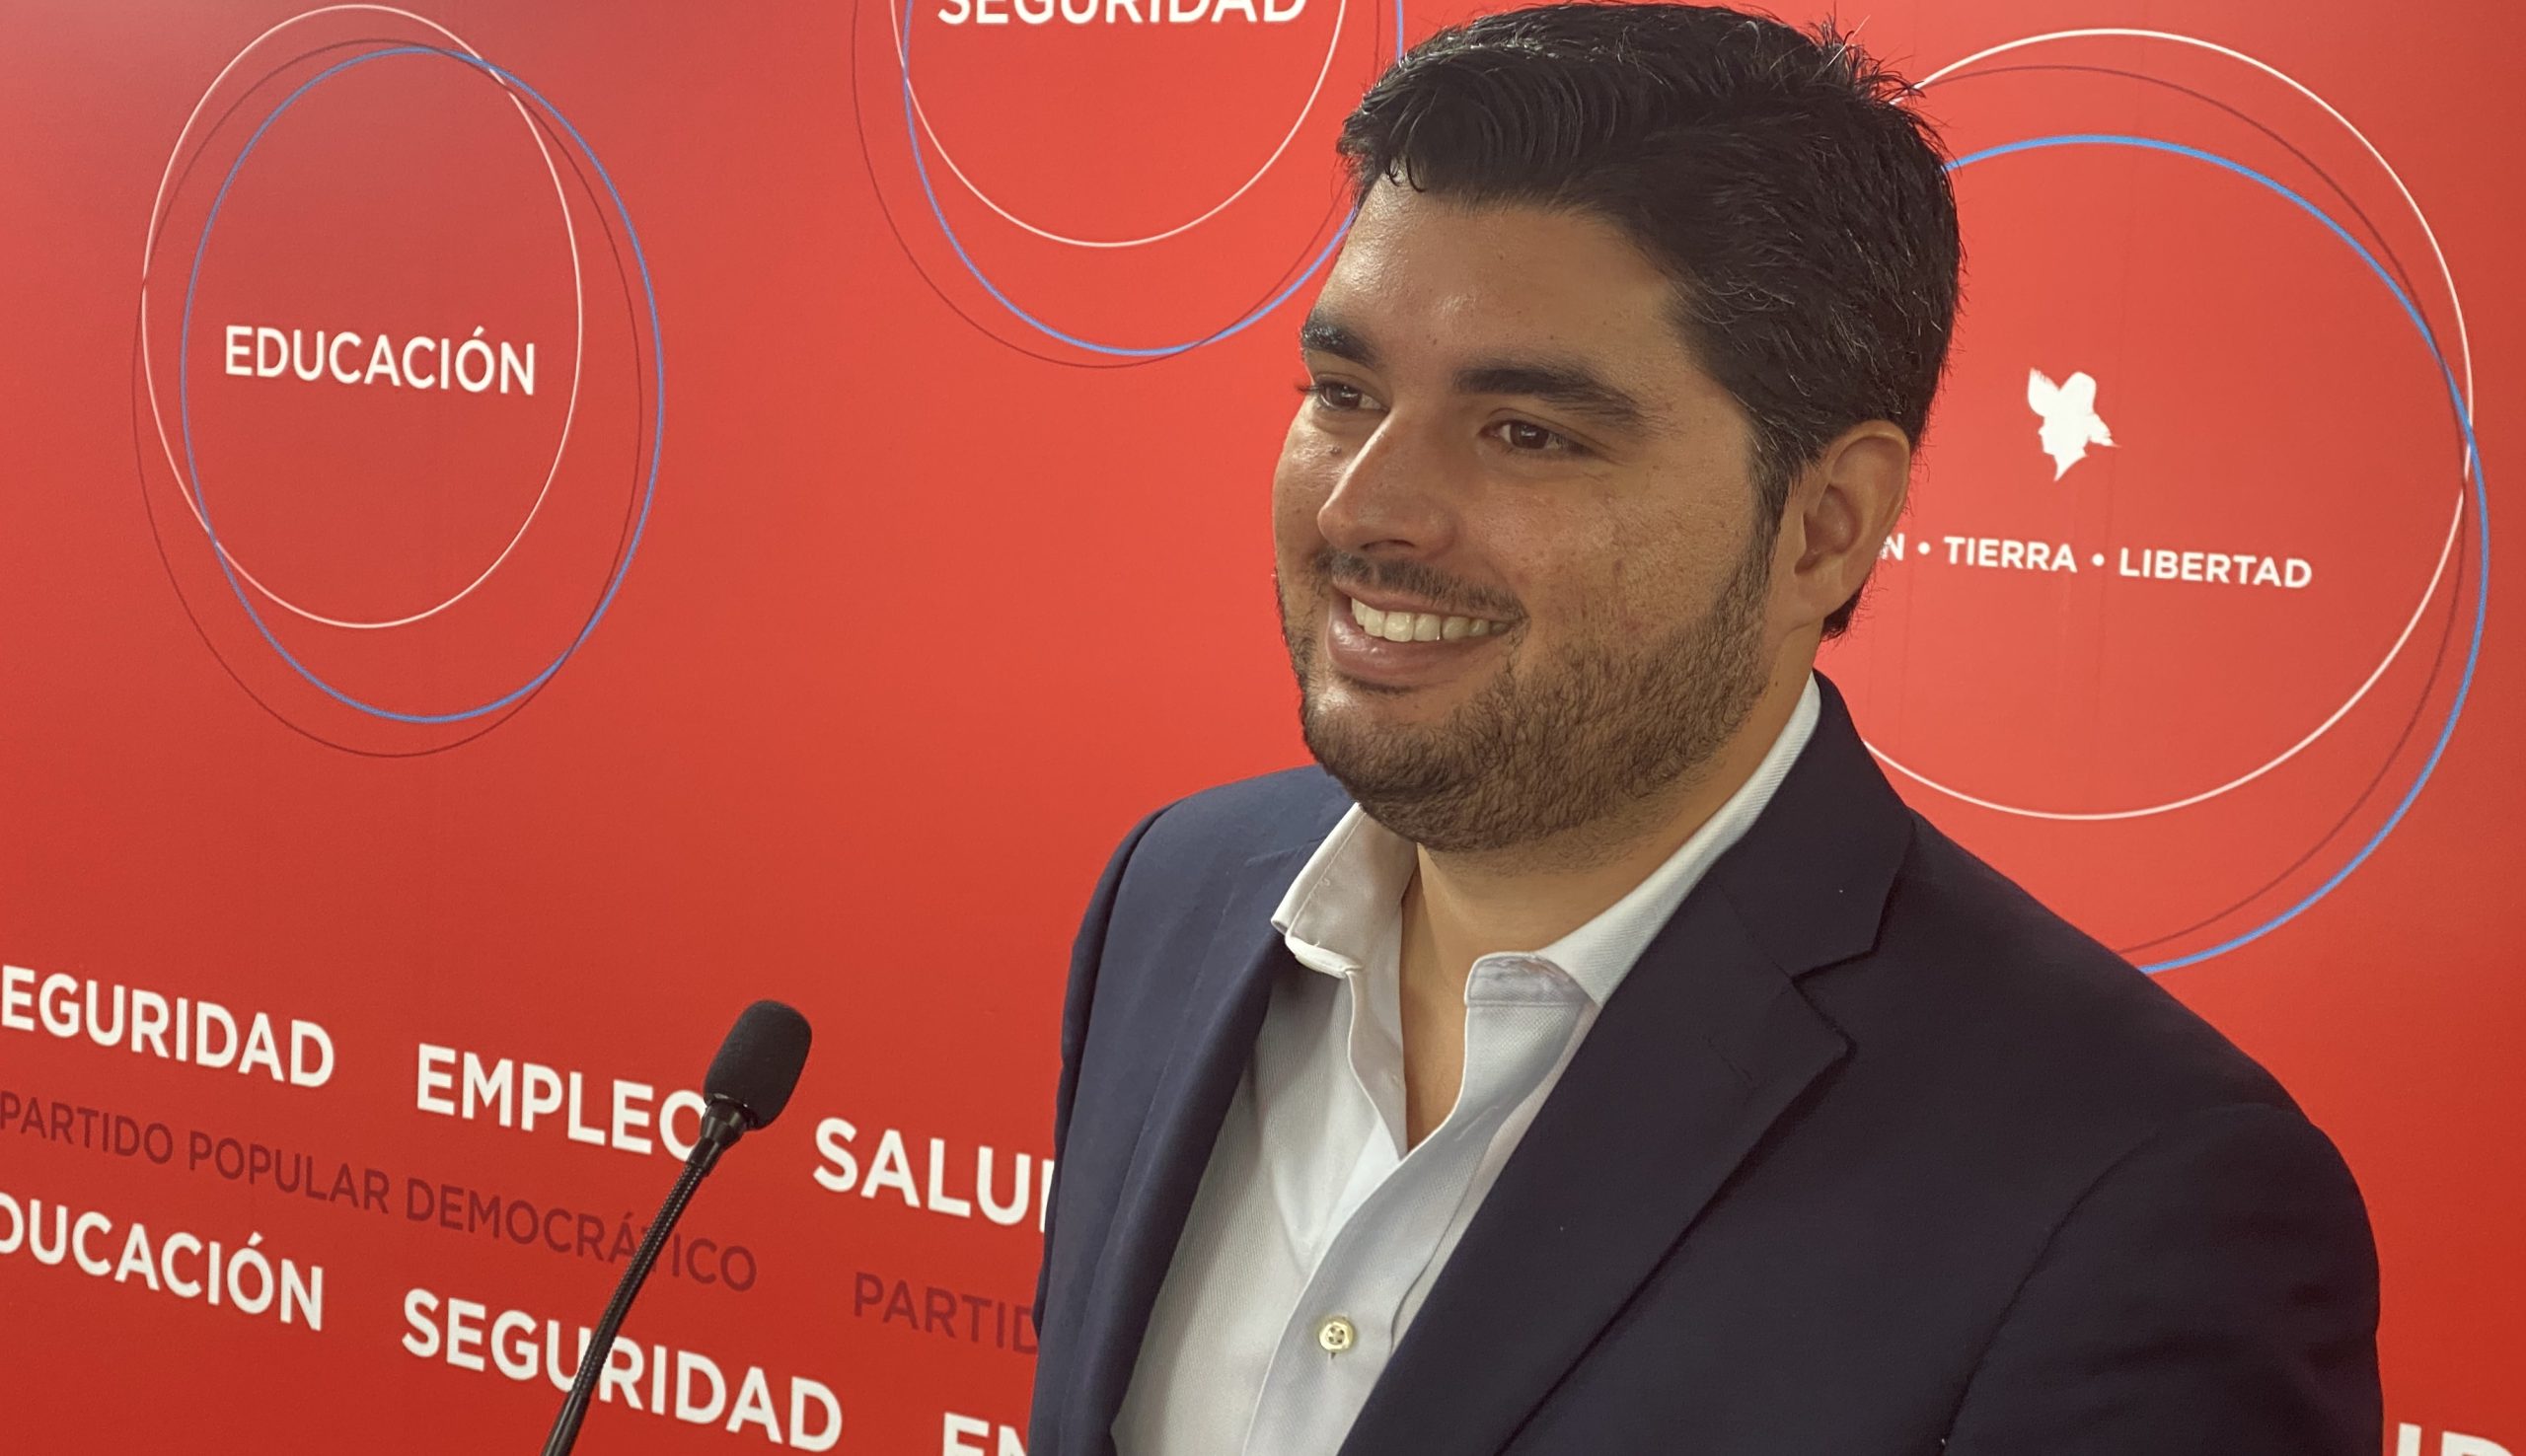 Manuel Calderón Cerame representará al distrito de San Juan en la Junta de Gobierno del Partido Popular Democrático